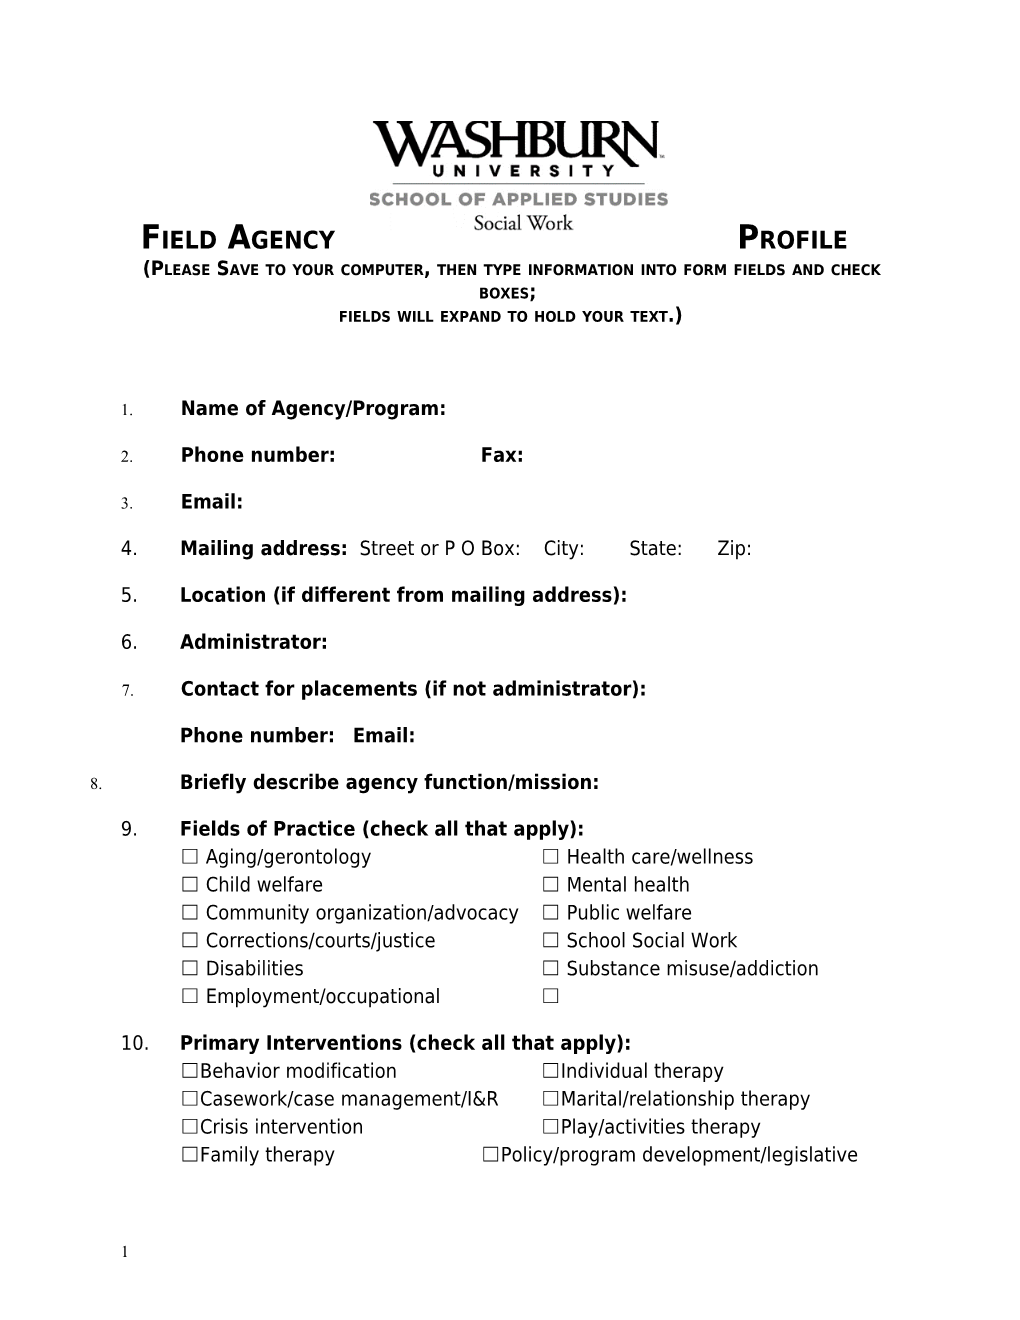 Field Agency Profile